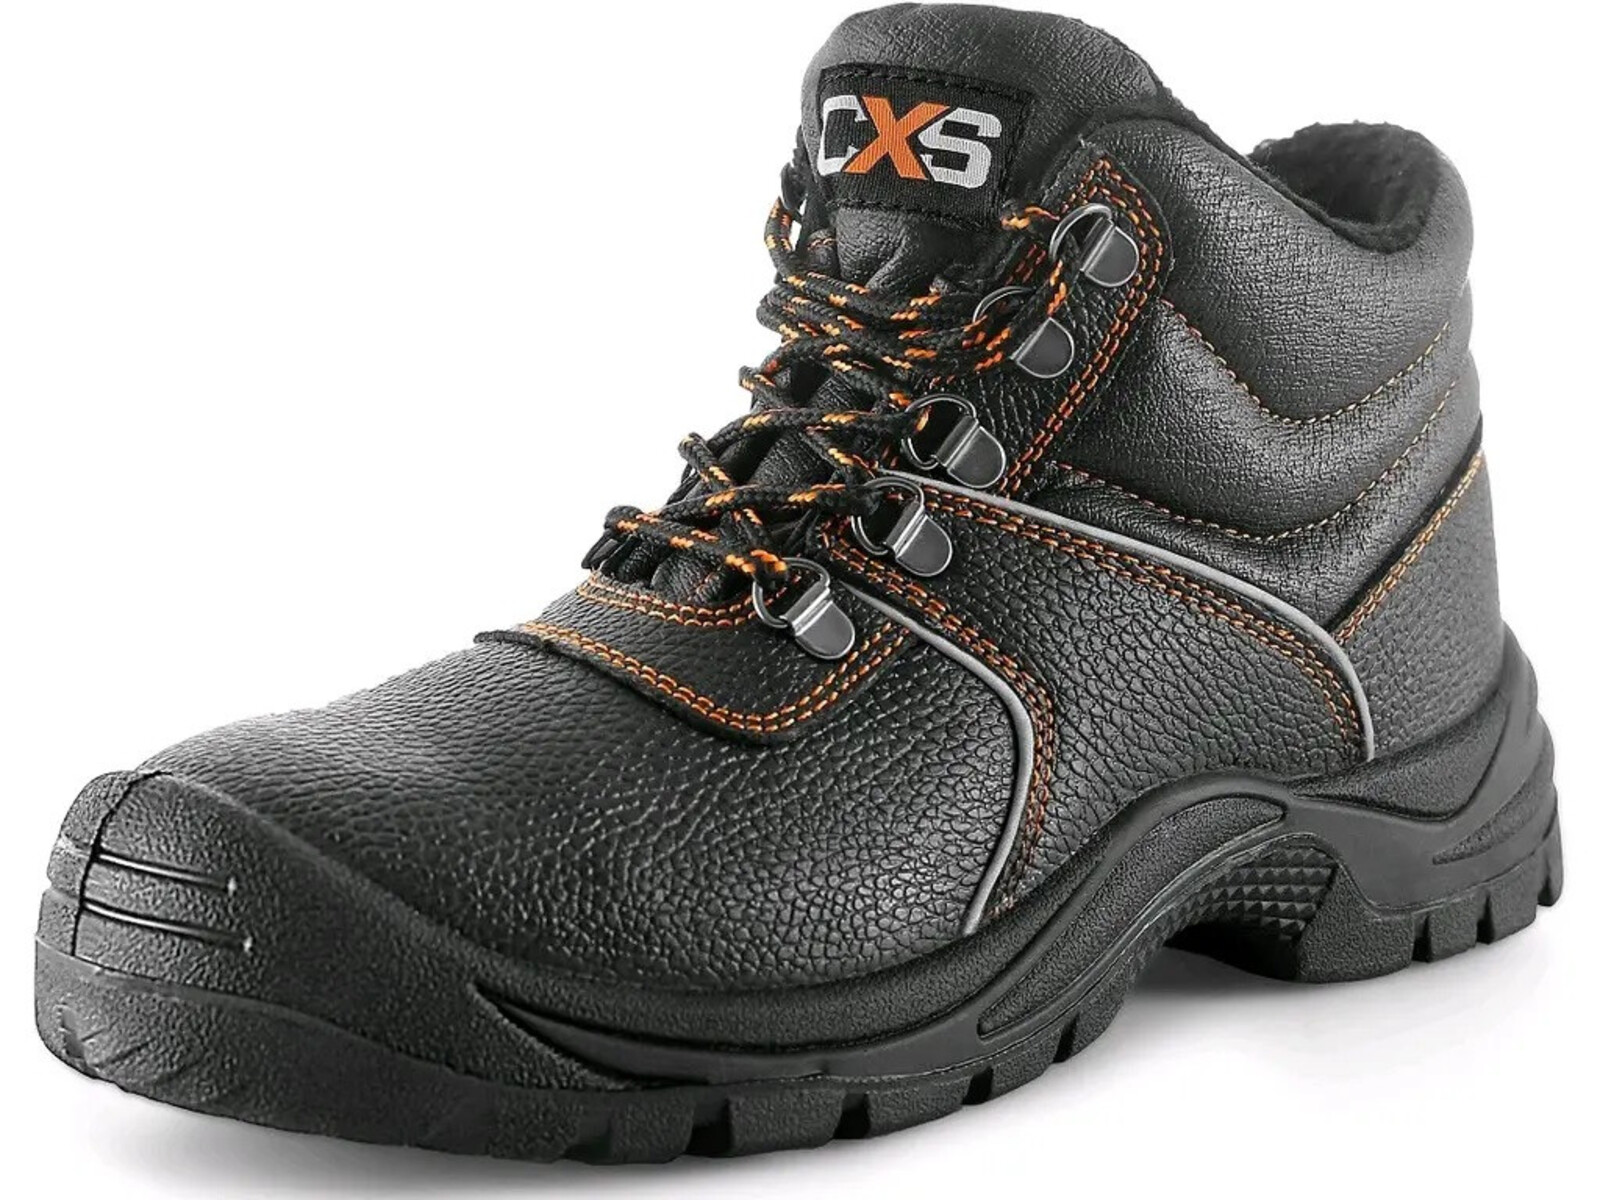 Zimná bezpečnostná členková obuv CXS Stone Apatit Winter S3 SRC - veľkosť: 46, farba: čierna/oranžová